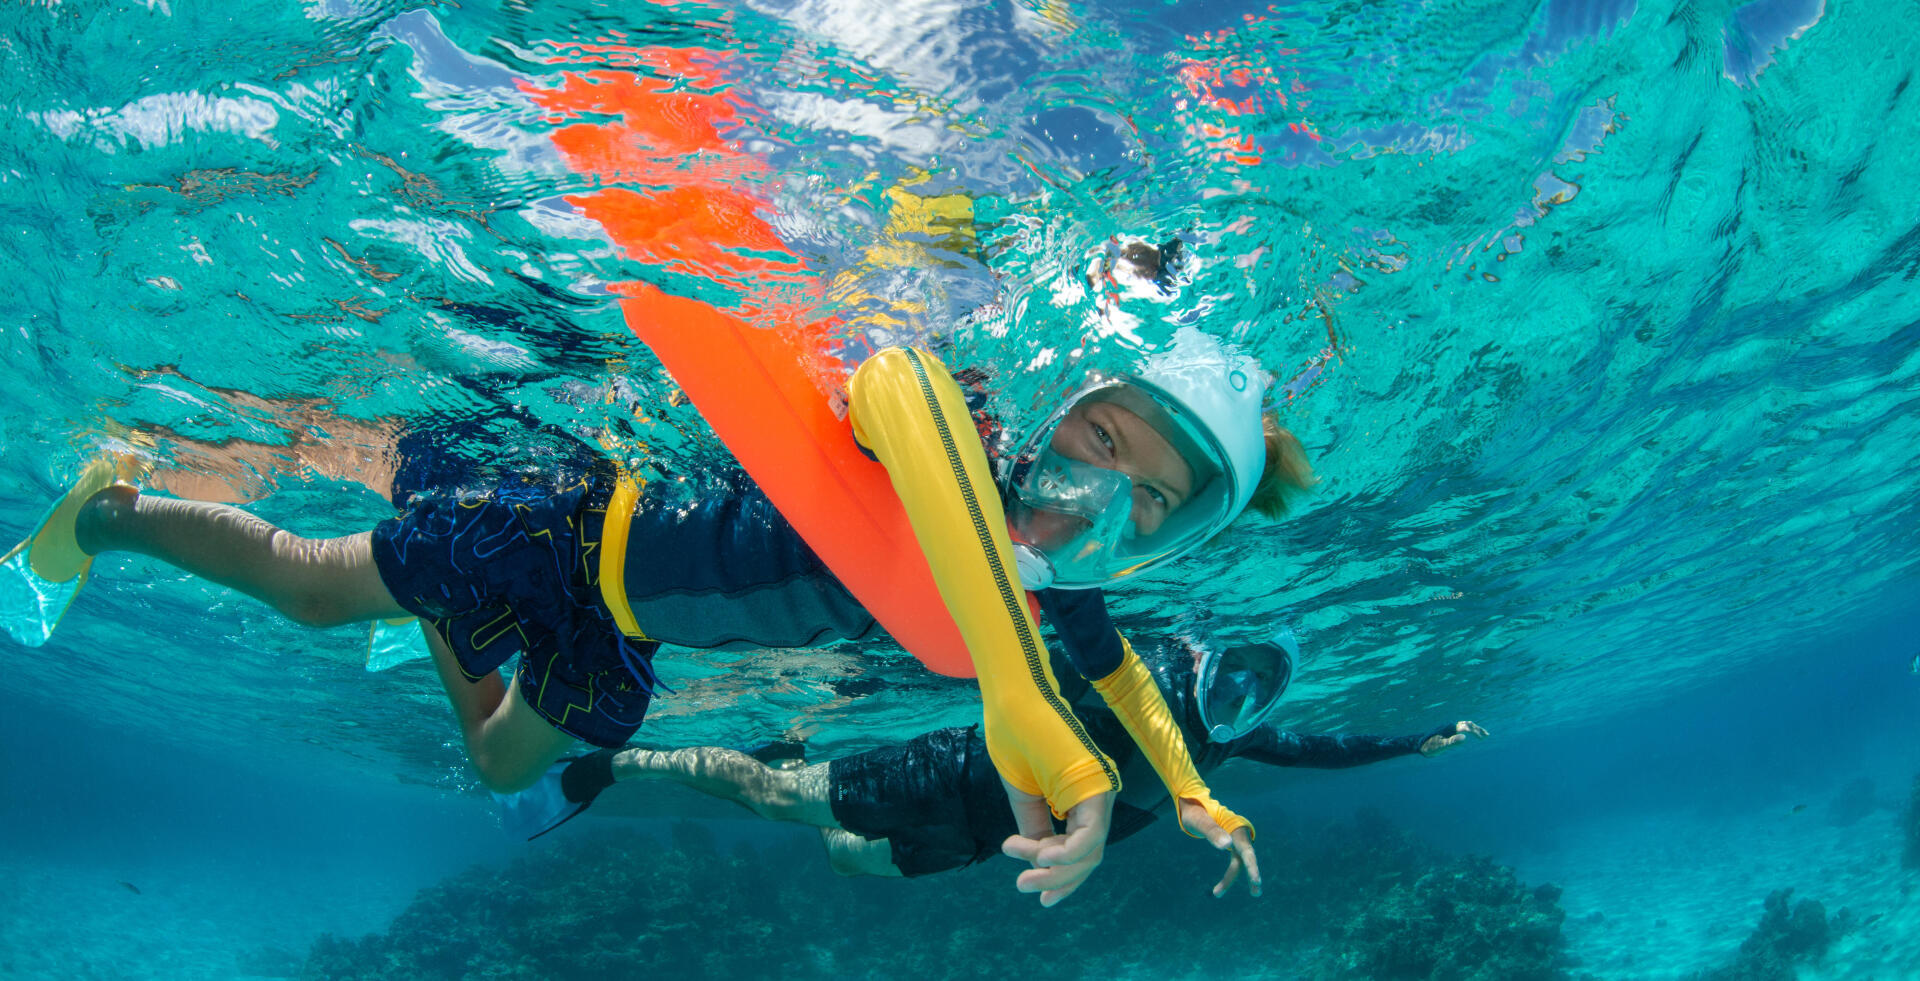 La protezione solare durante lo snorkeling | DECATHLON